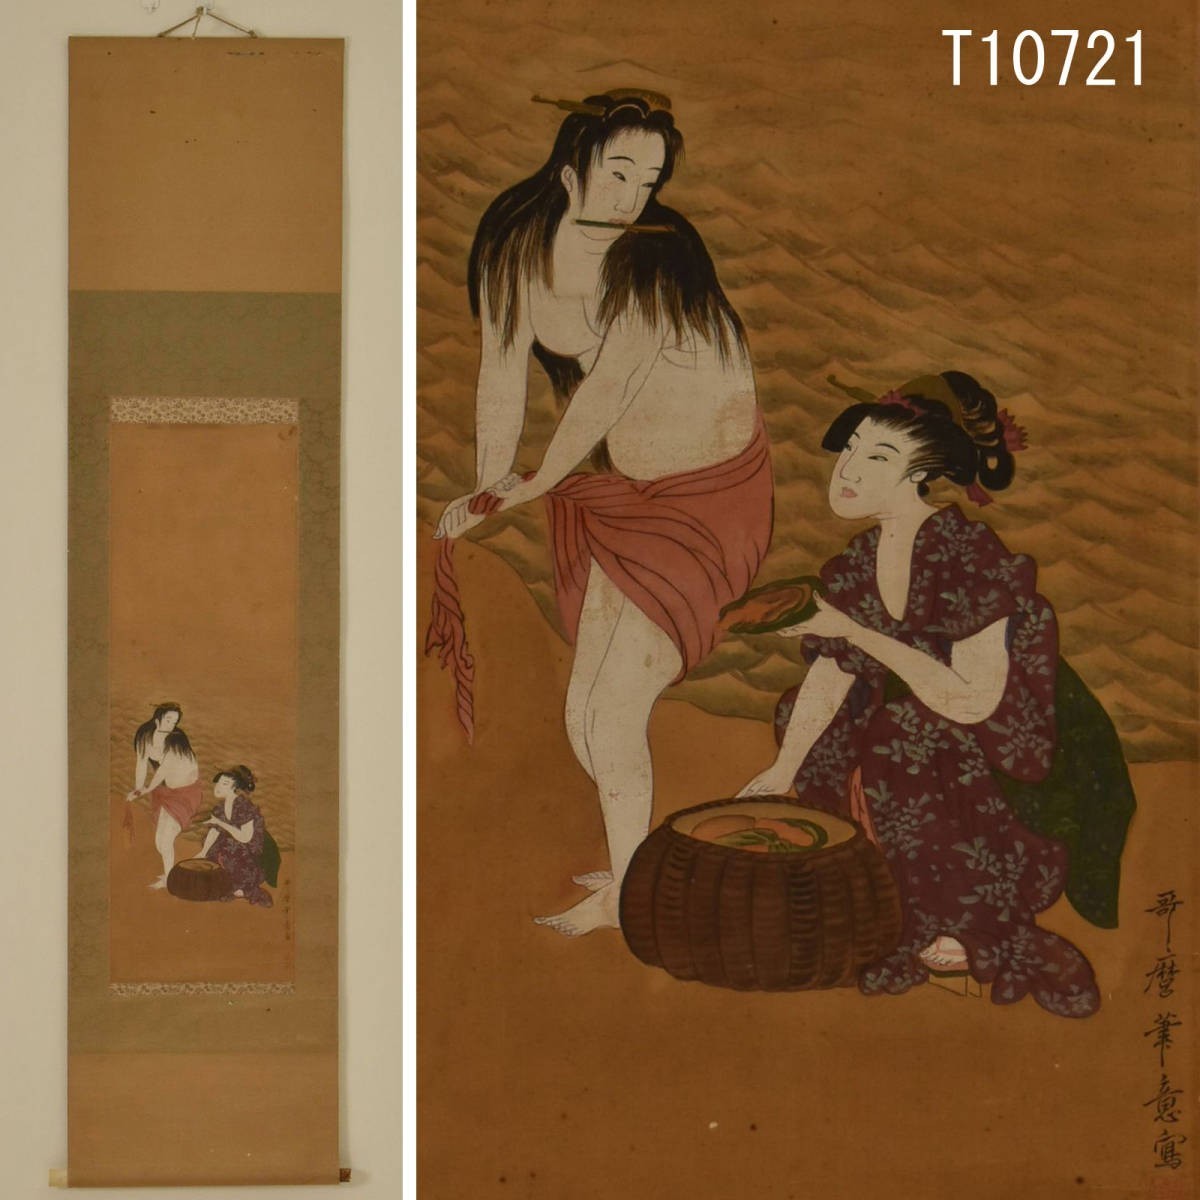 T10721 喜多郎手写美人画挂轴：真迹, 绘画, 日本画, 人, 菩萨